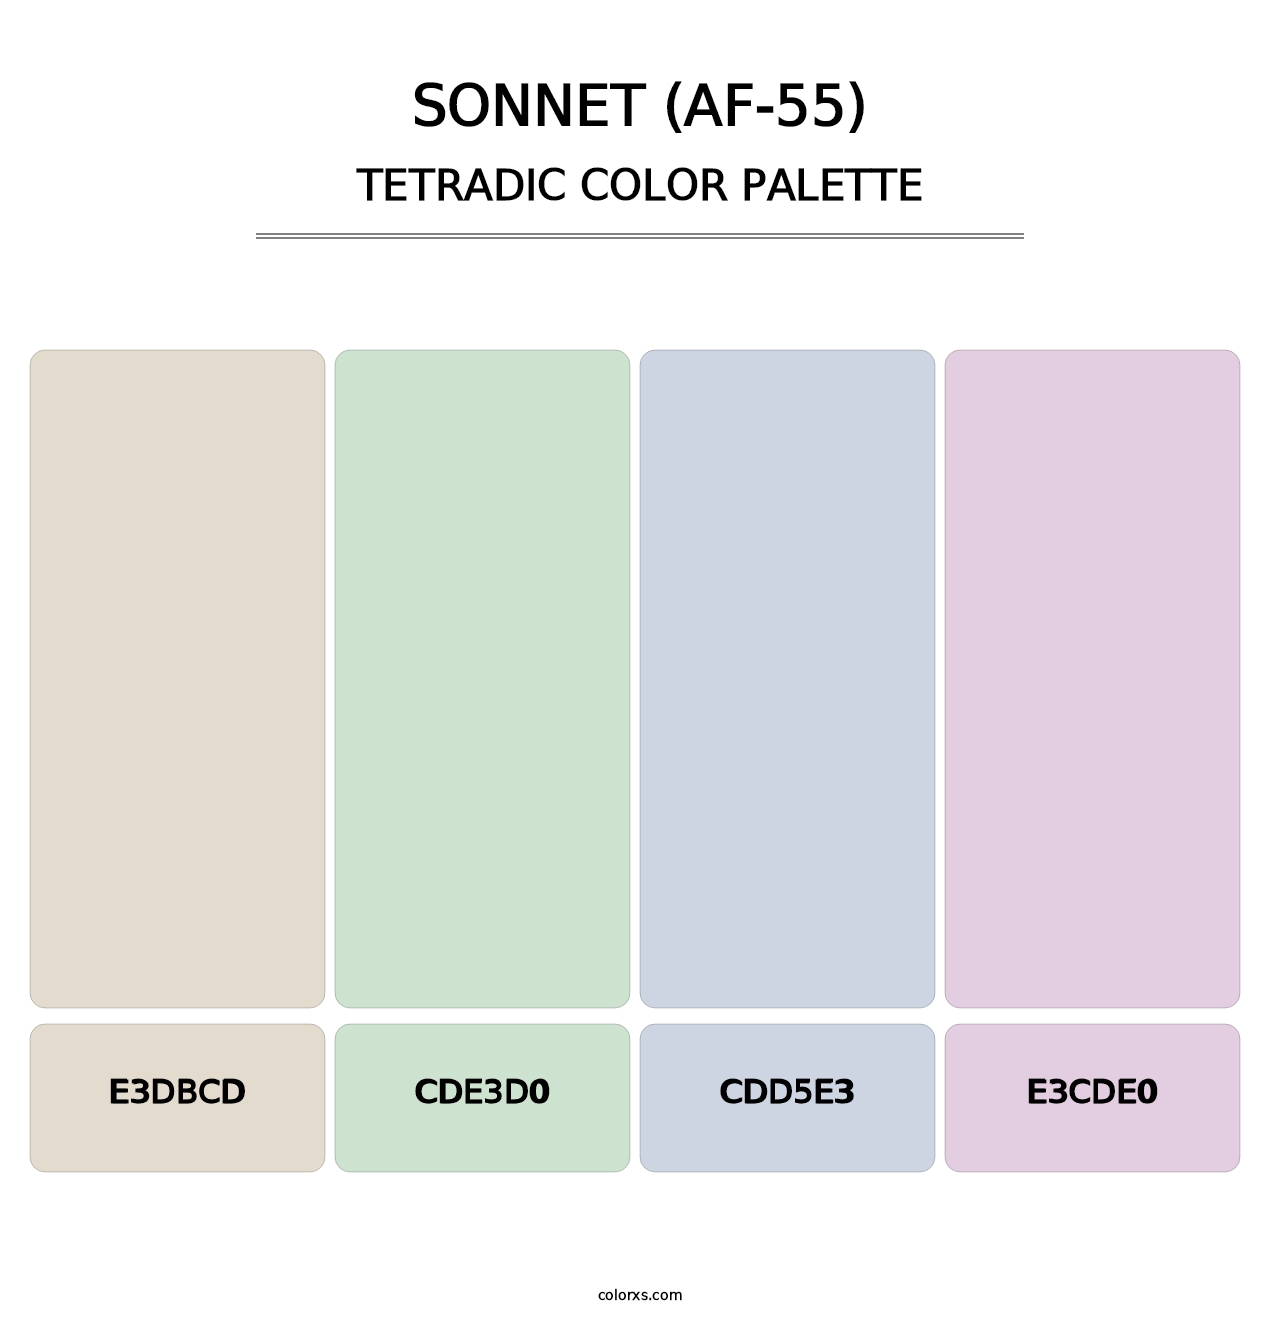 Sonnet (AF-55) - Tetradic Color Palette